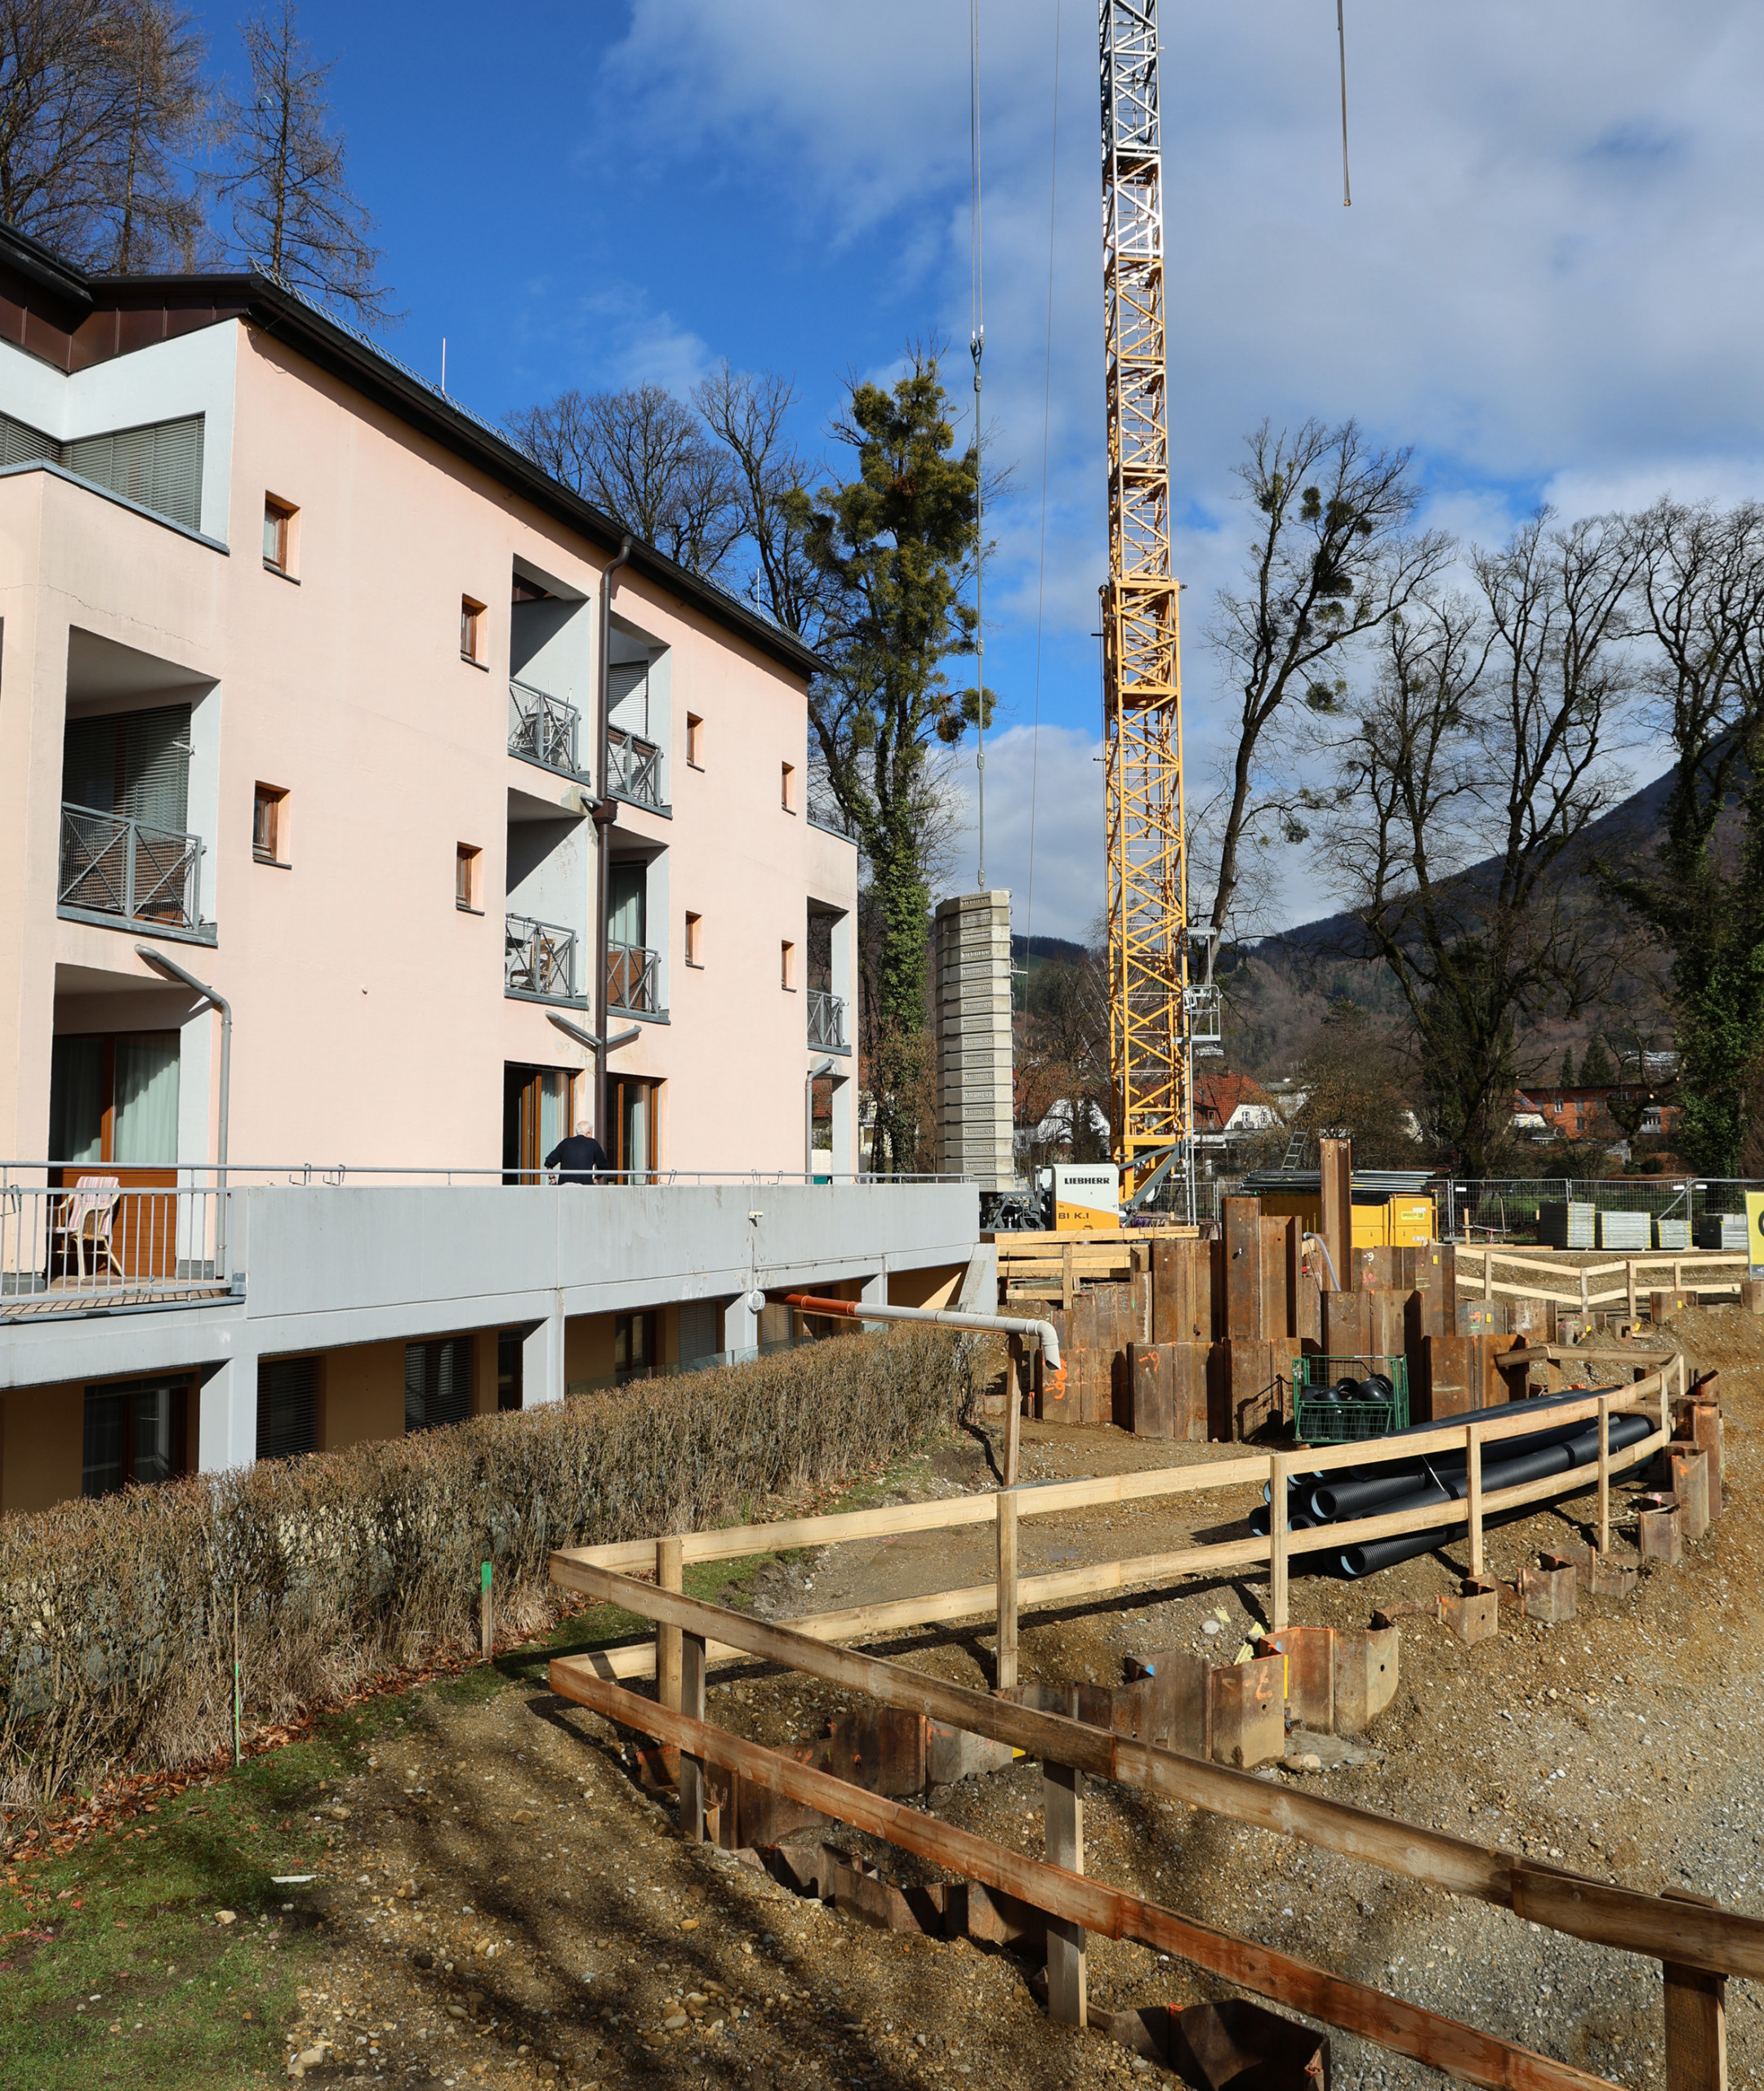 Die Baustelle für das neue "ÖJAB-Pflegewohnhaus Salzburg - Wohlfühlen im Park" und links die derzeitige ÖJAB-Senior:innenwohnanlage Aigen, die nach Generalsanierung Teil des neuen Pflegewohnhauses wird. 